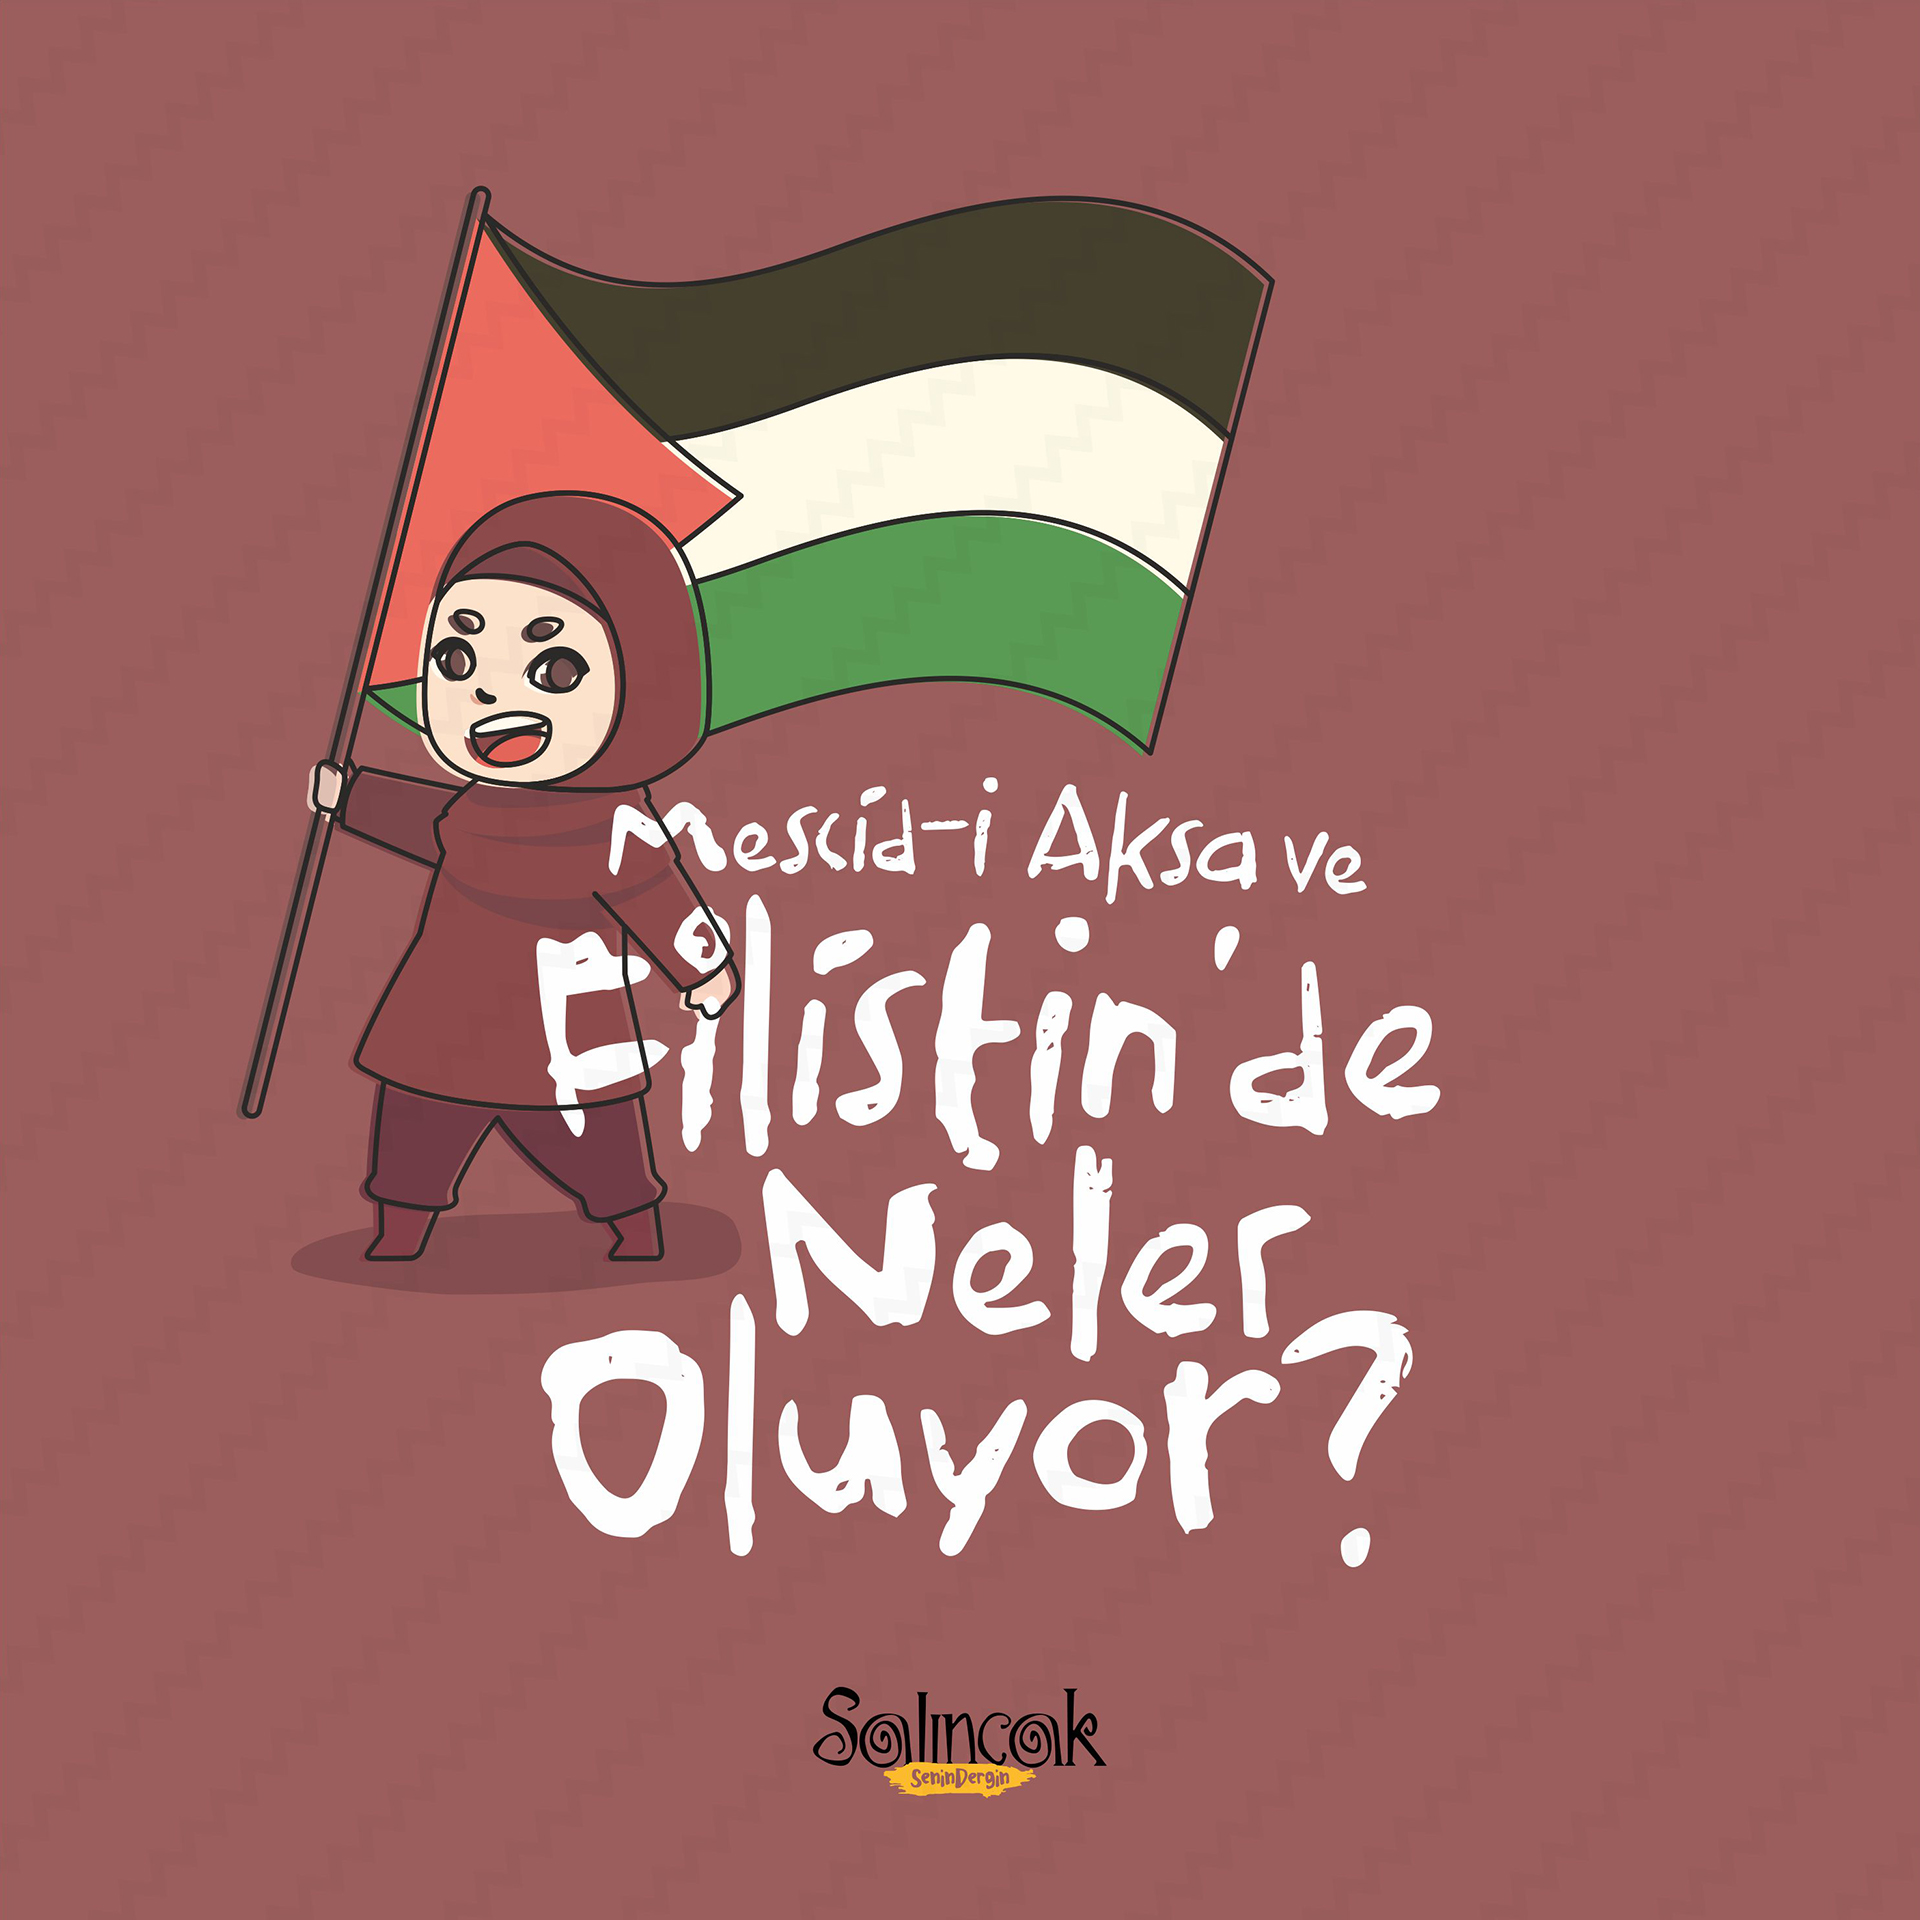 Mescid-i Aksa ve Filistin'de Neler Oluyor?